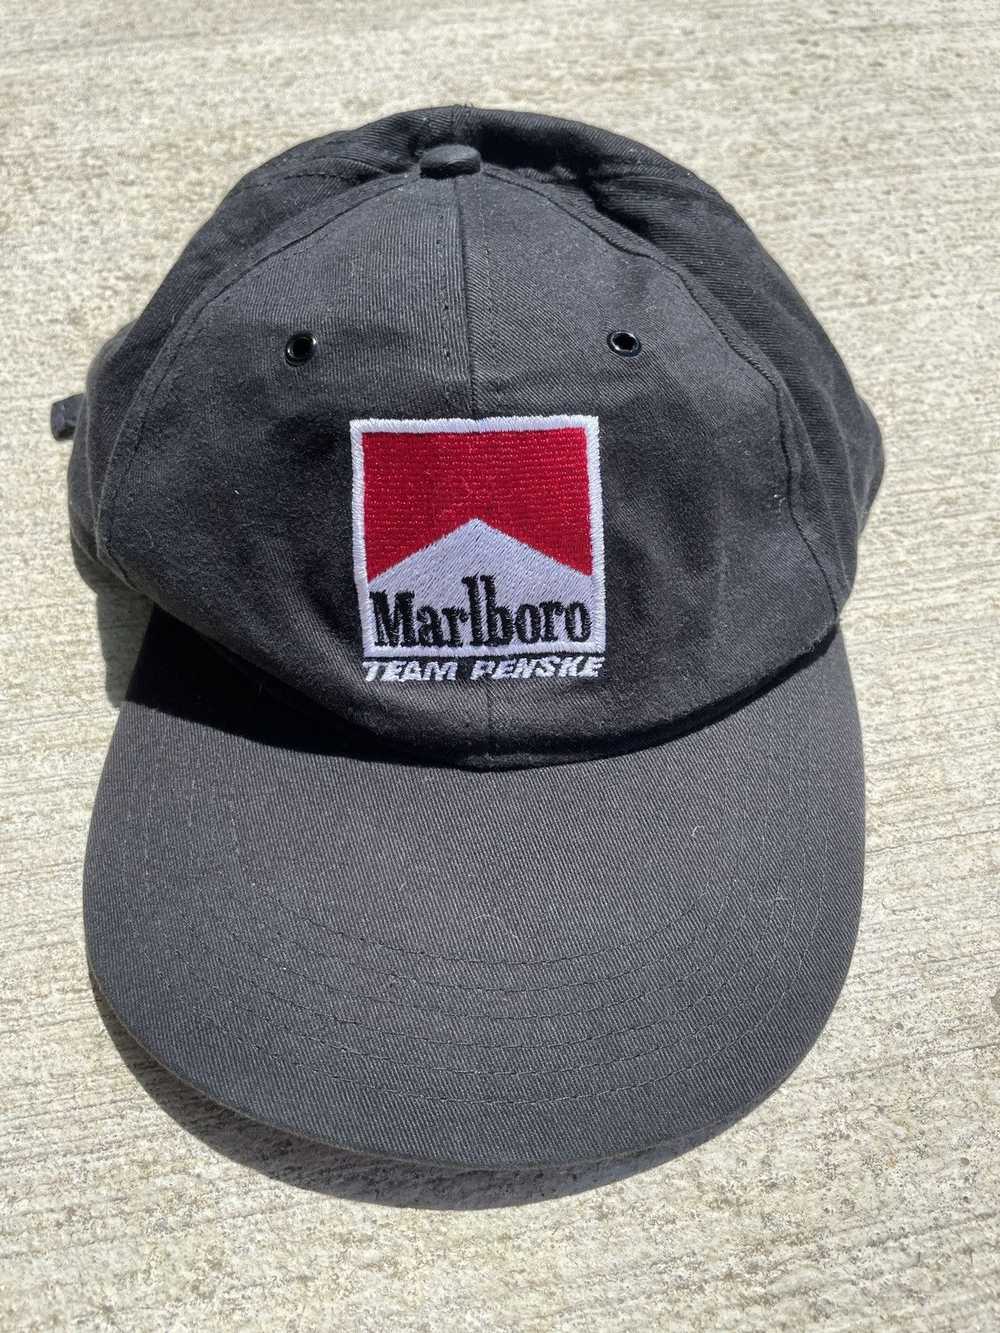 Marlboro × Streetwear × Vintage Marlboro hat - image 1